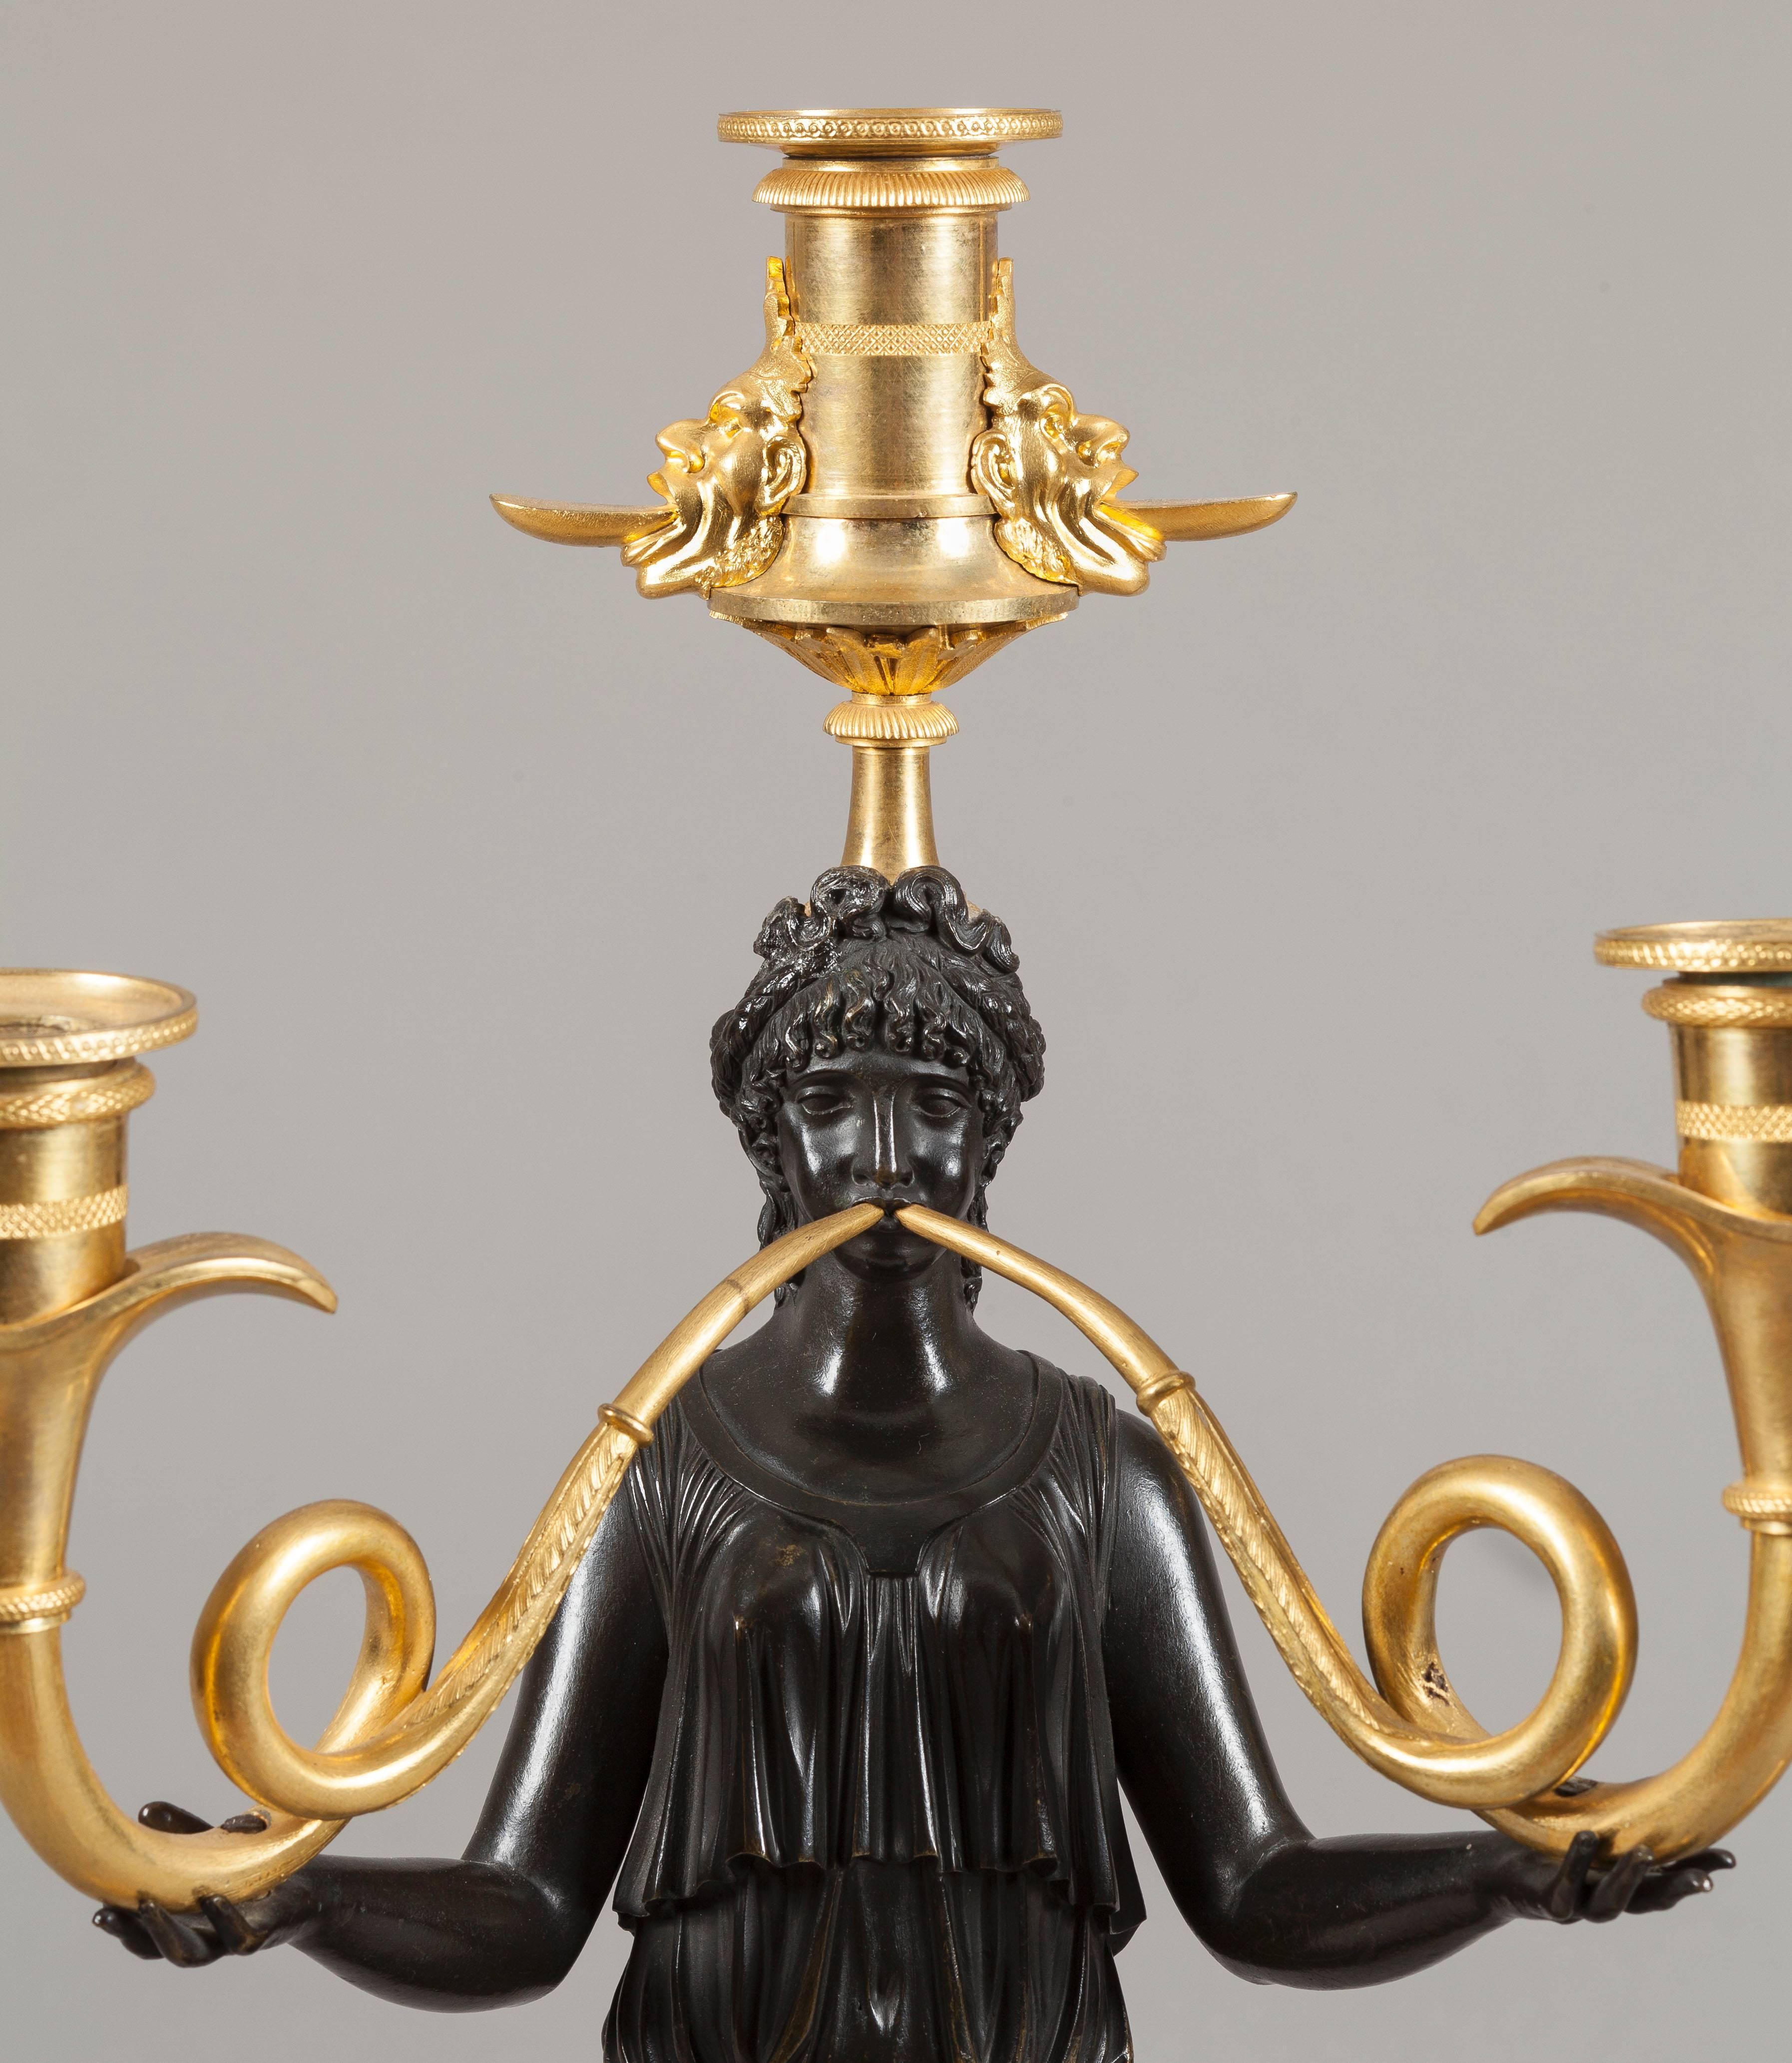 
Construites en bronze doré et patiné bicolore, les figures féminines grecques, drapées de robes diaphanes, soufflent dans des trompettes bi-formées en forme de balayage, terminées par des chandeliers et coiffées de chandeliers simples, habillées